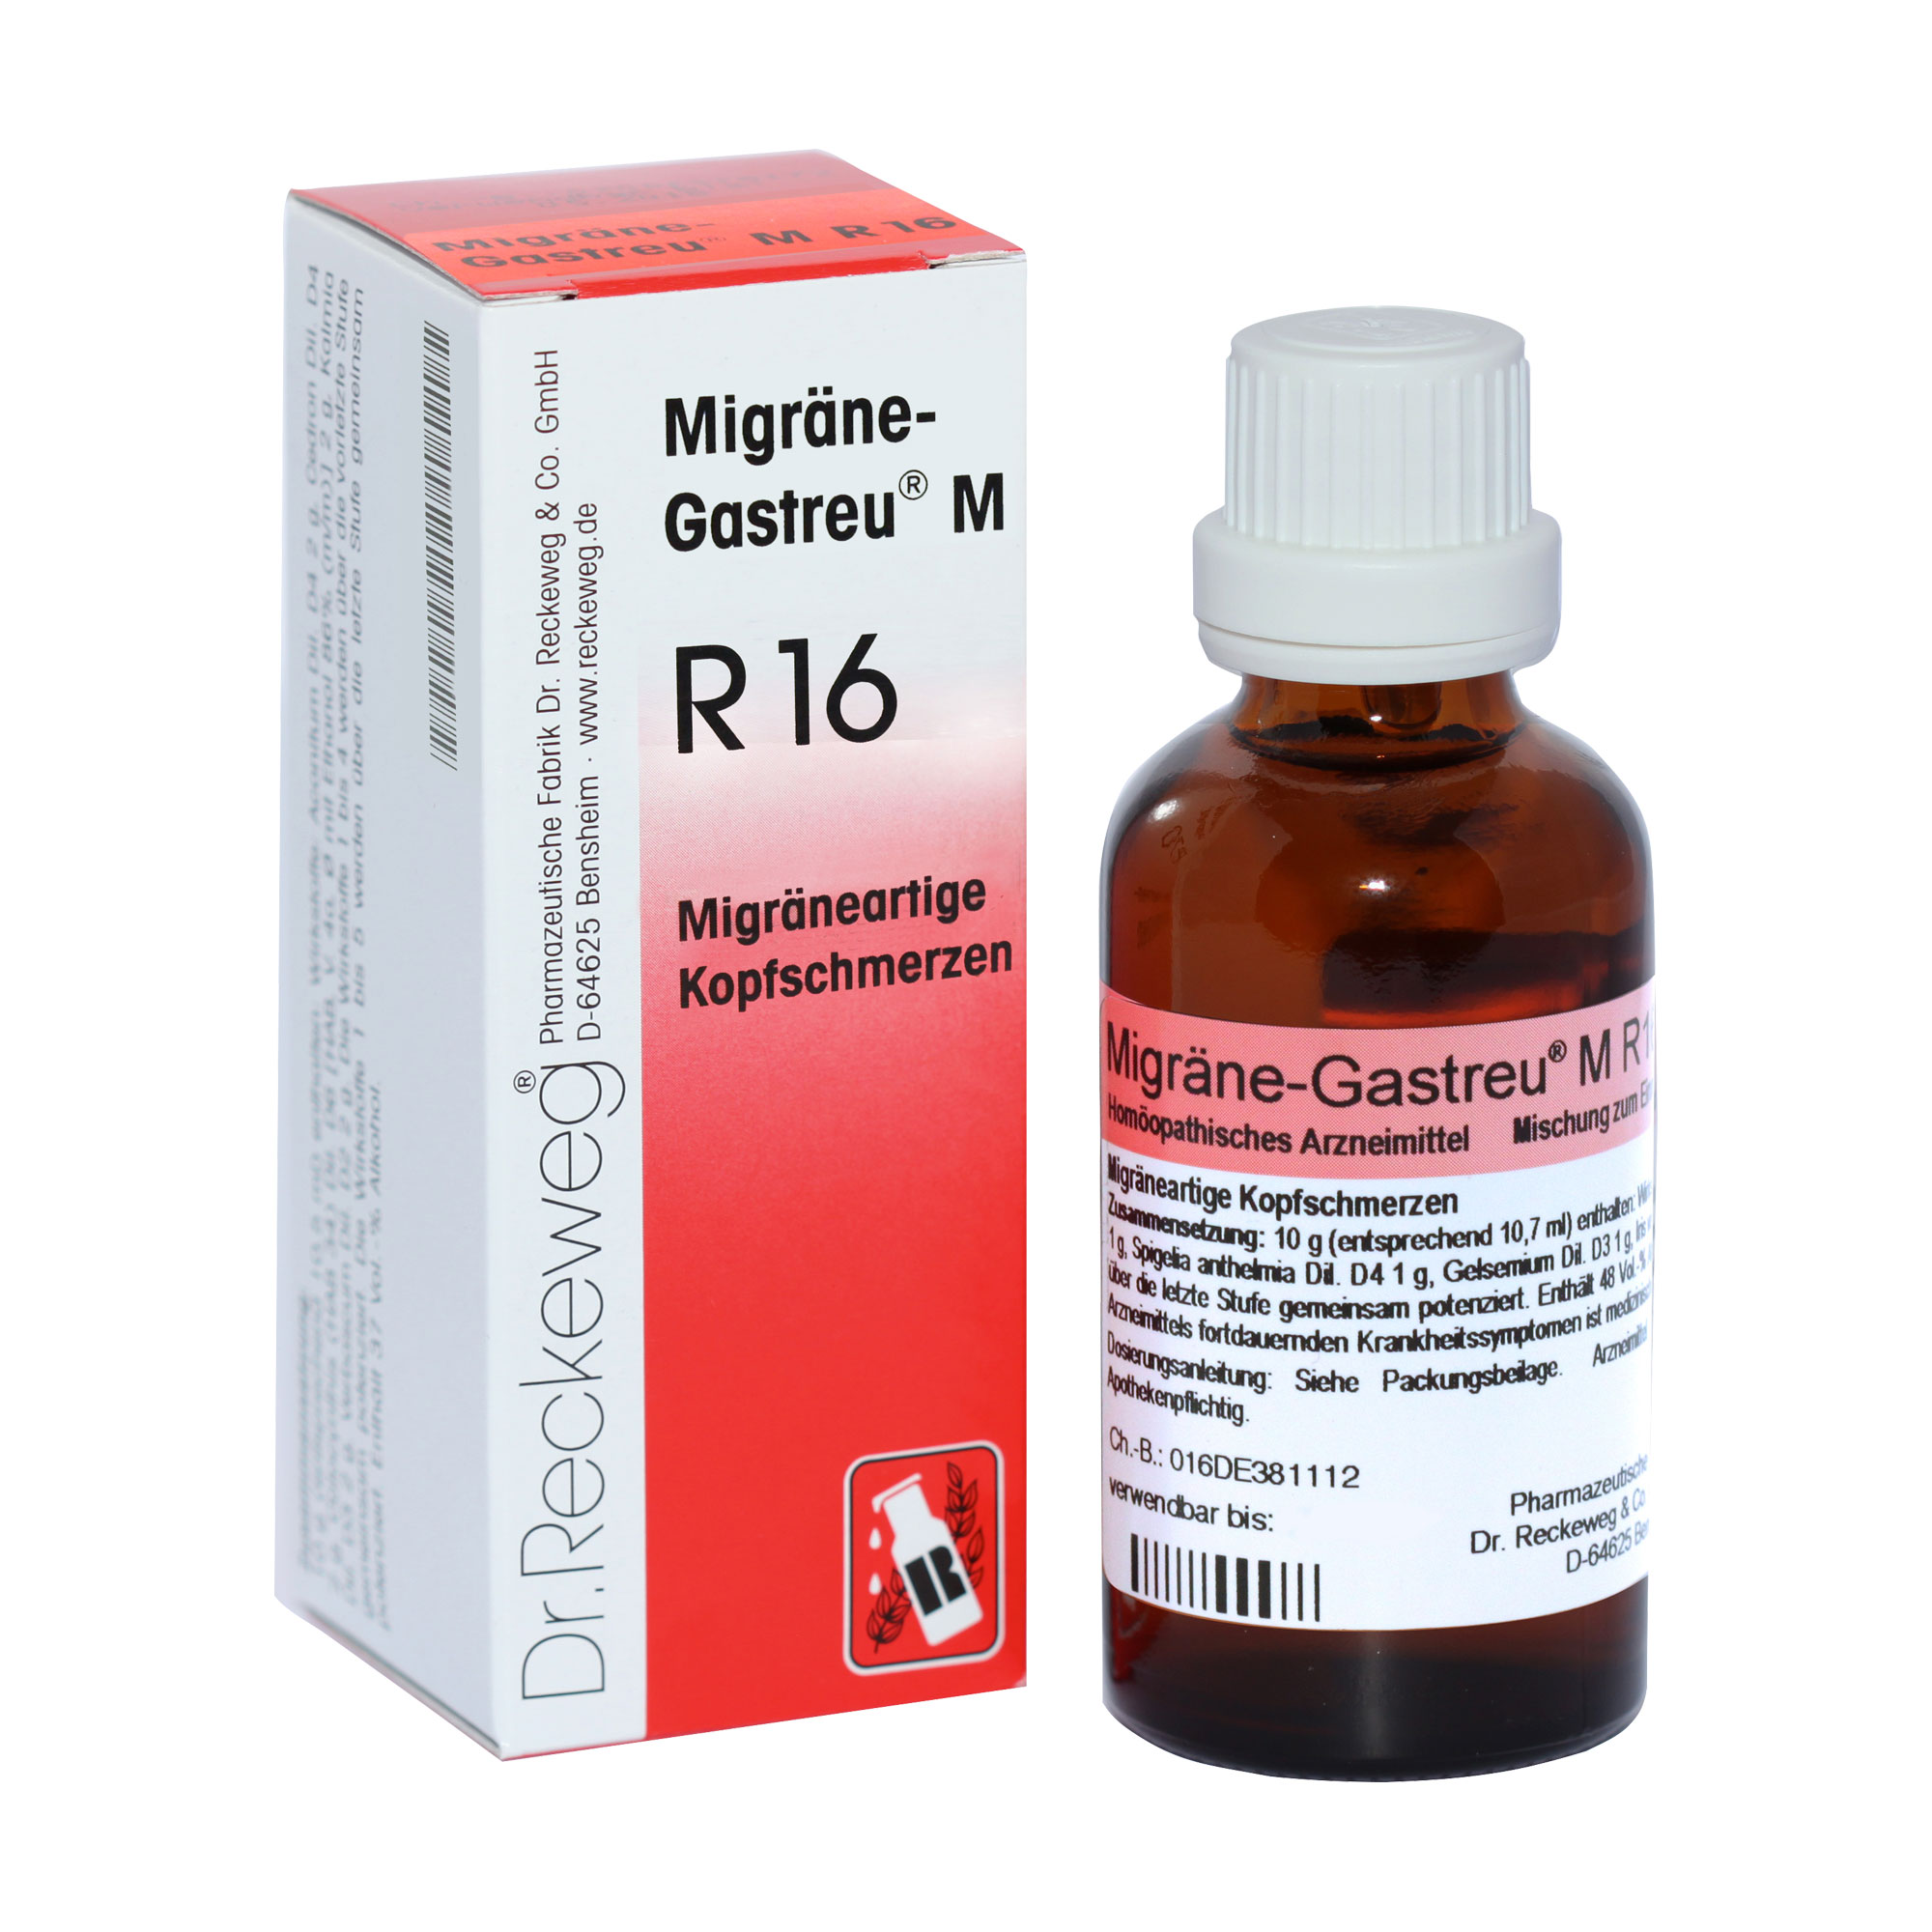 Homöopathischen Arzneimittel zur Besserung der Beschwerden bei migräneartigen Kopfschmerzen.